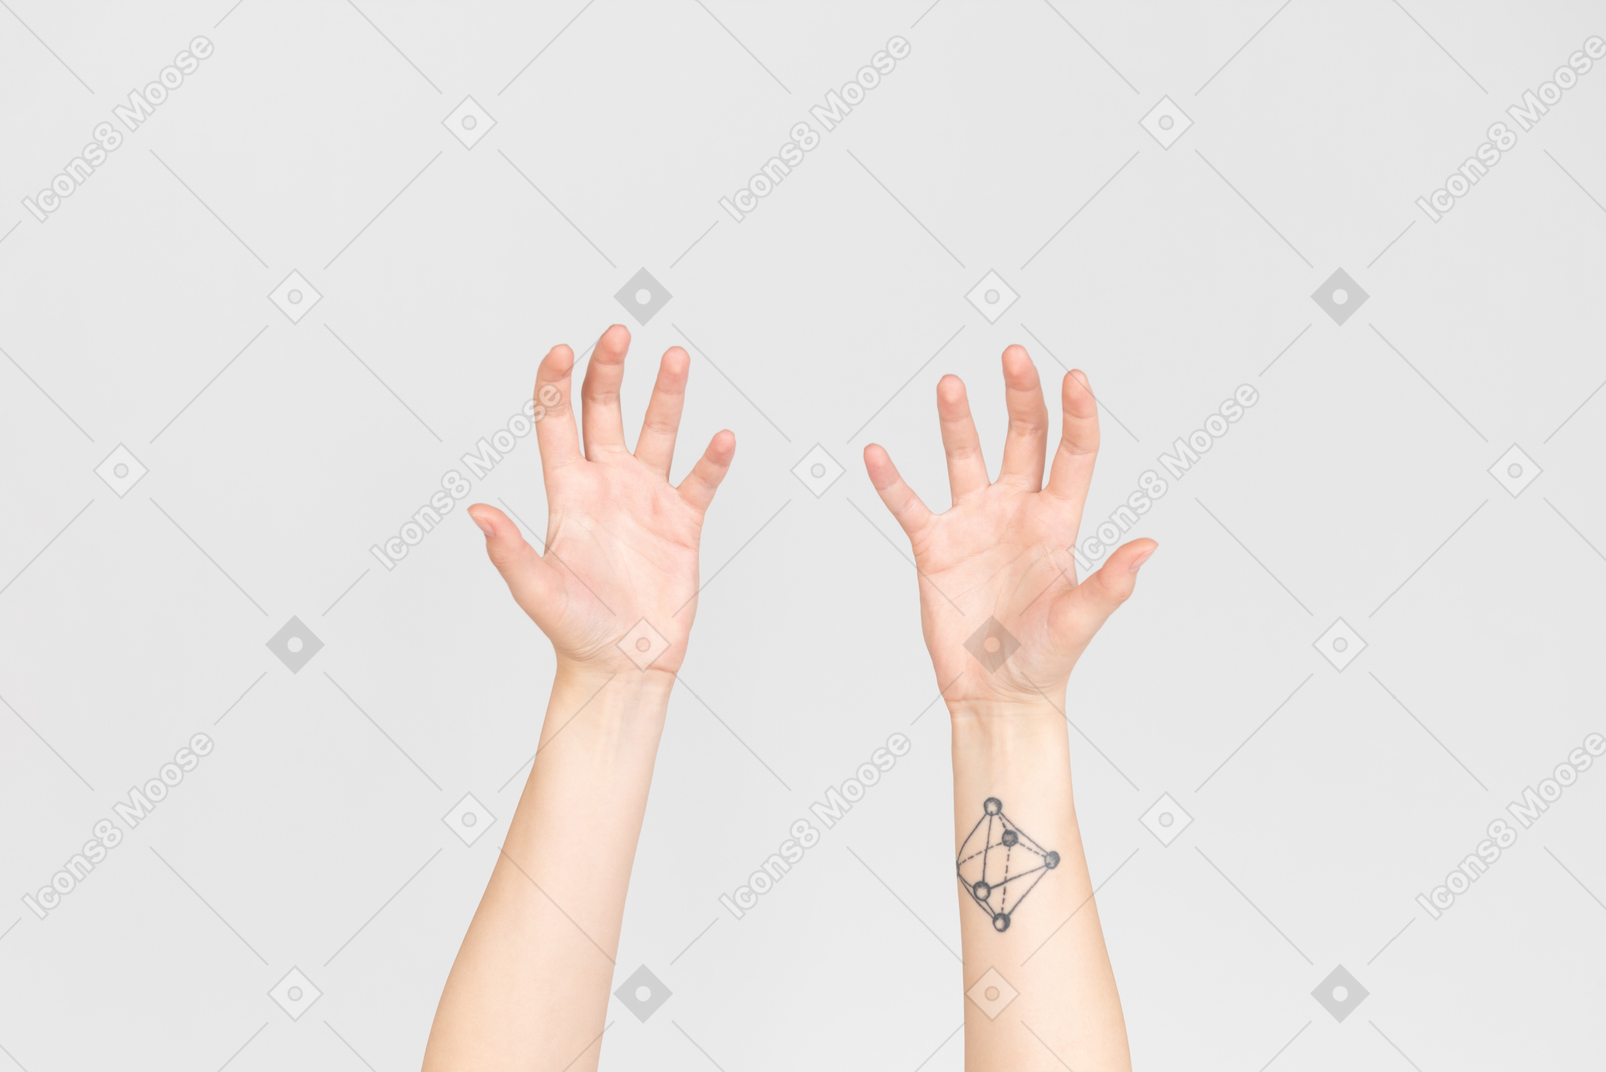 カメラに示されている女性の手の手のひら